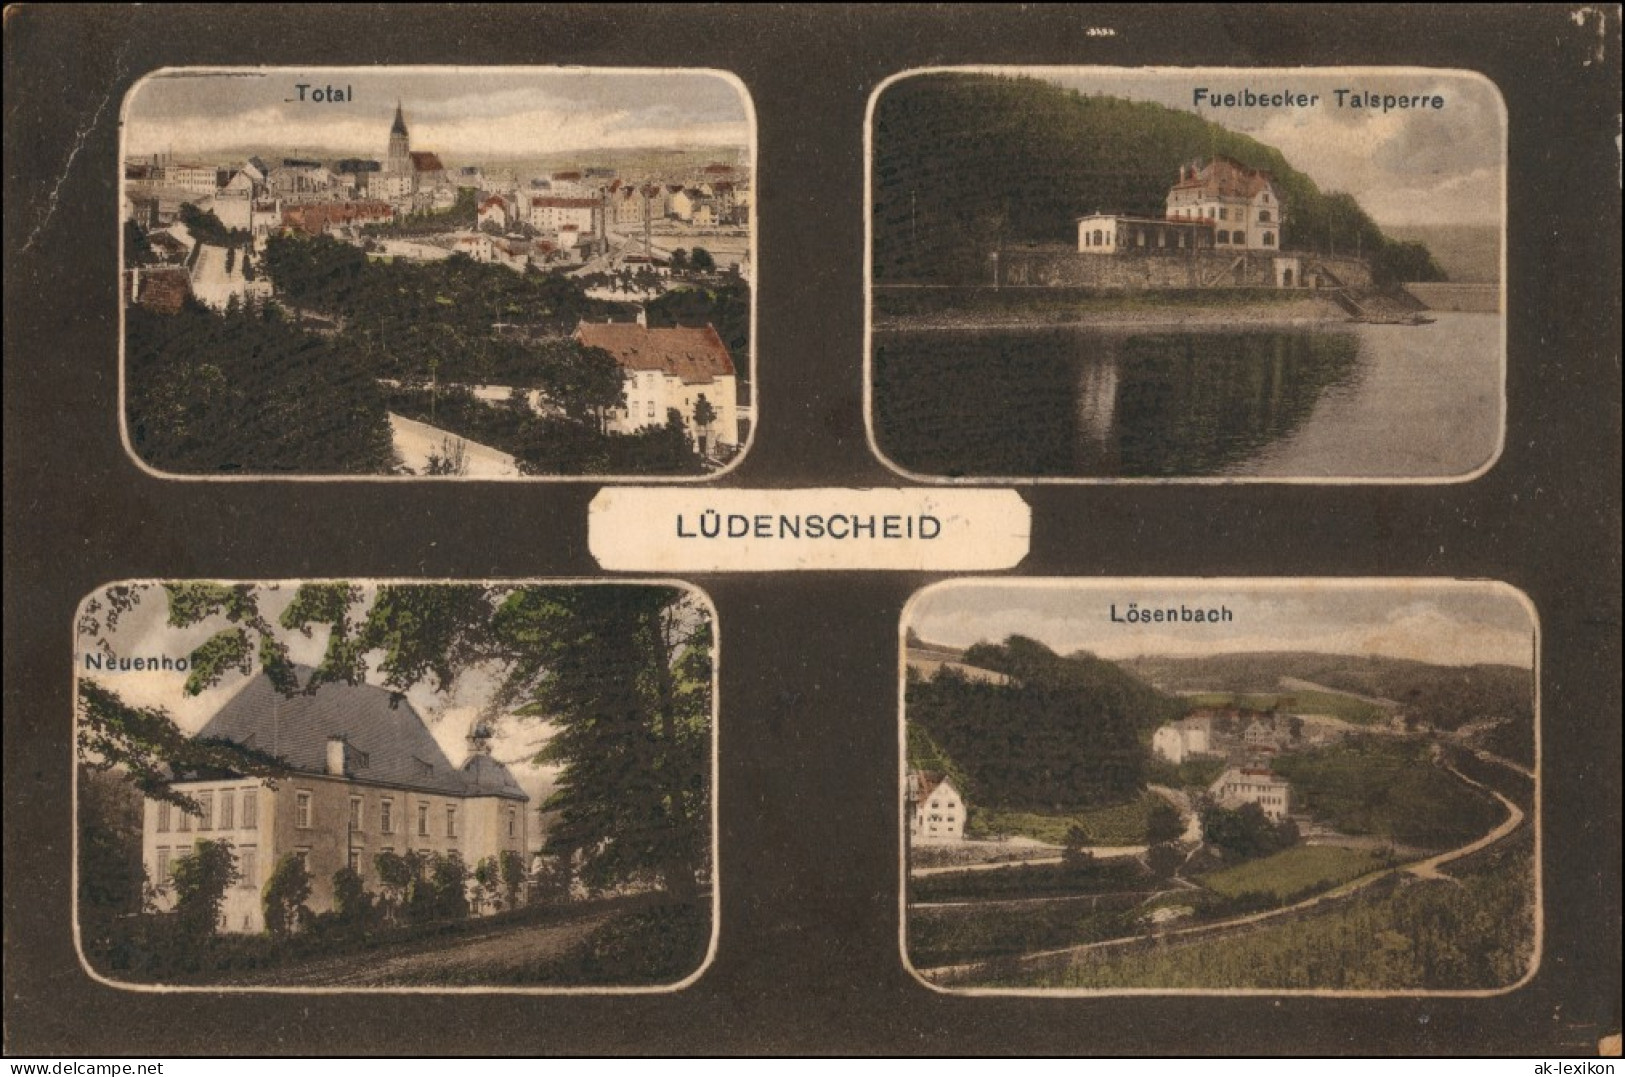 Ansichtskarte Lüdenscheid 4 Bild Totale, Lösenbach, Neuenhof 1922 - Luedenscheid